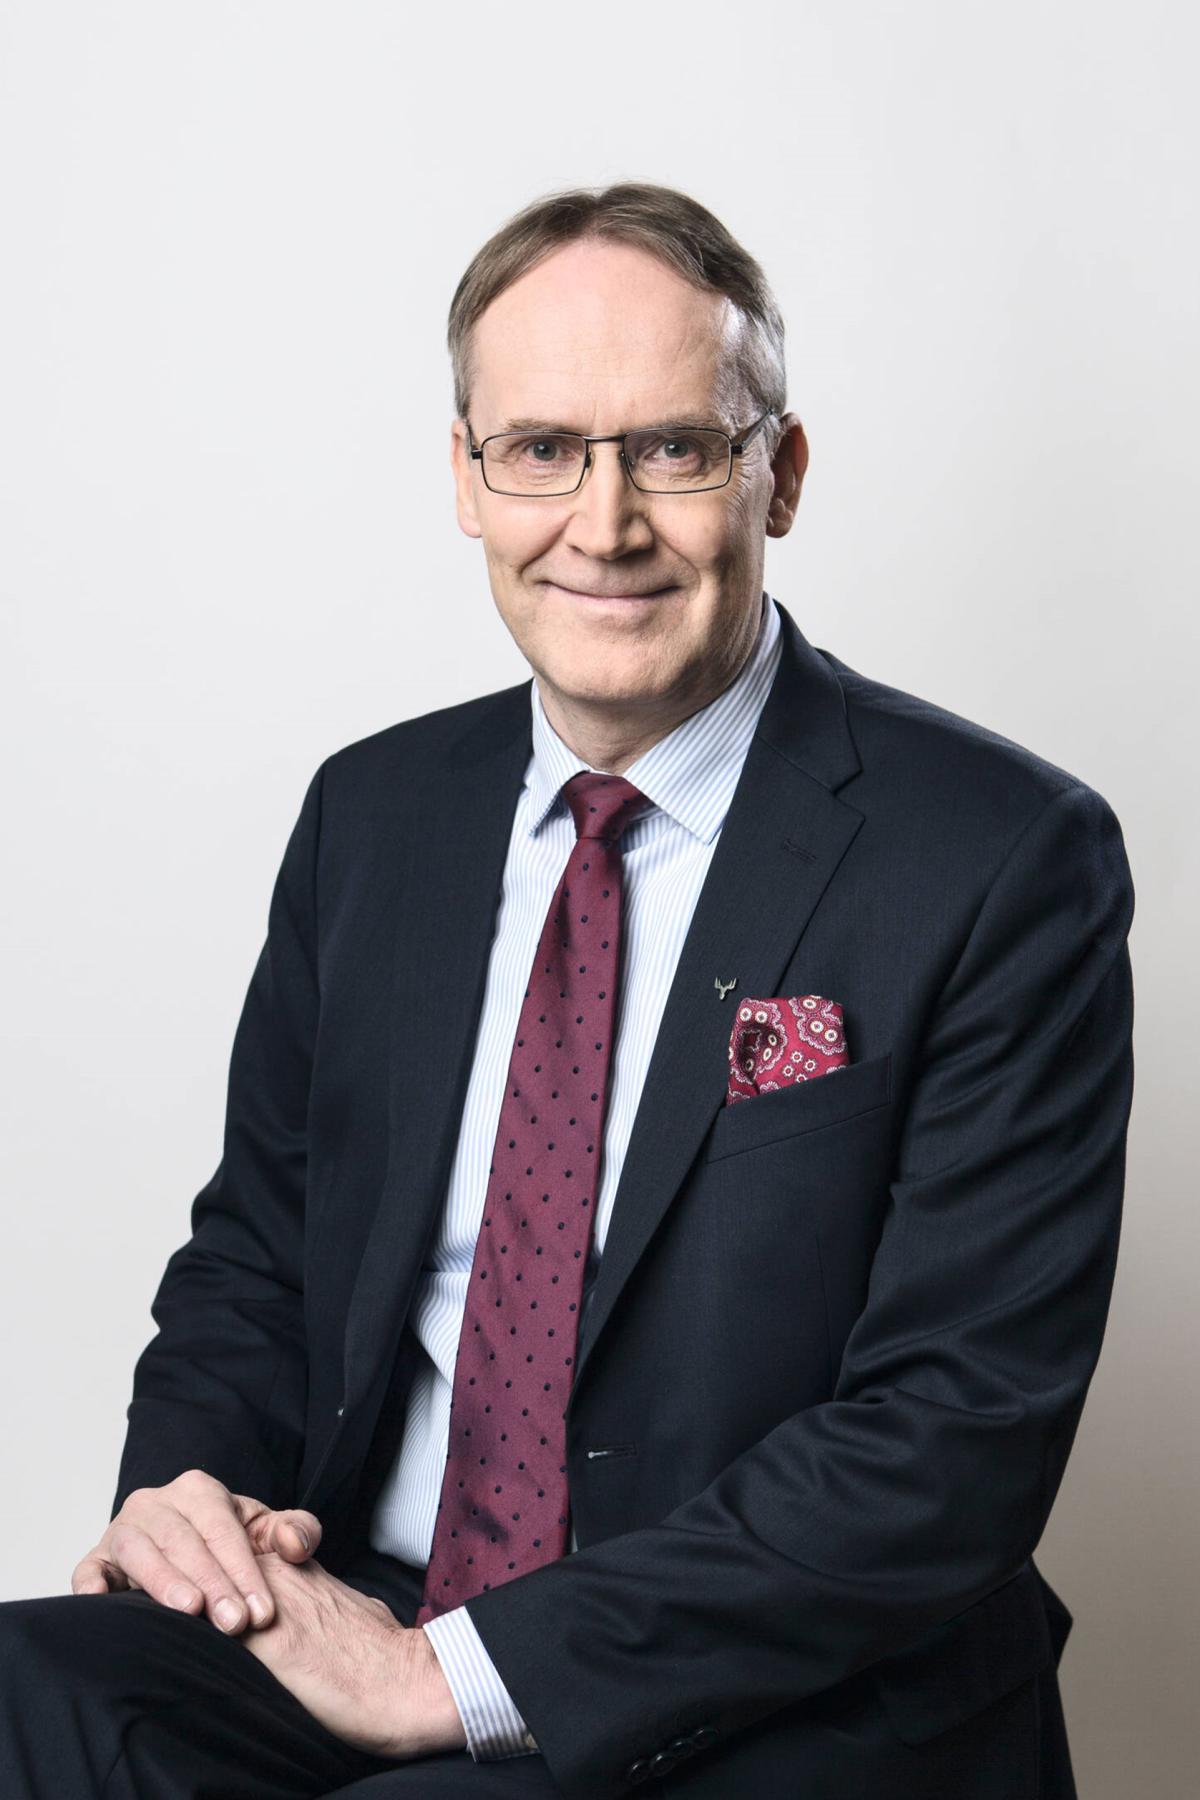 Taavi Heikkilä